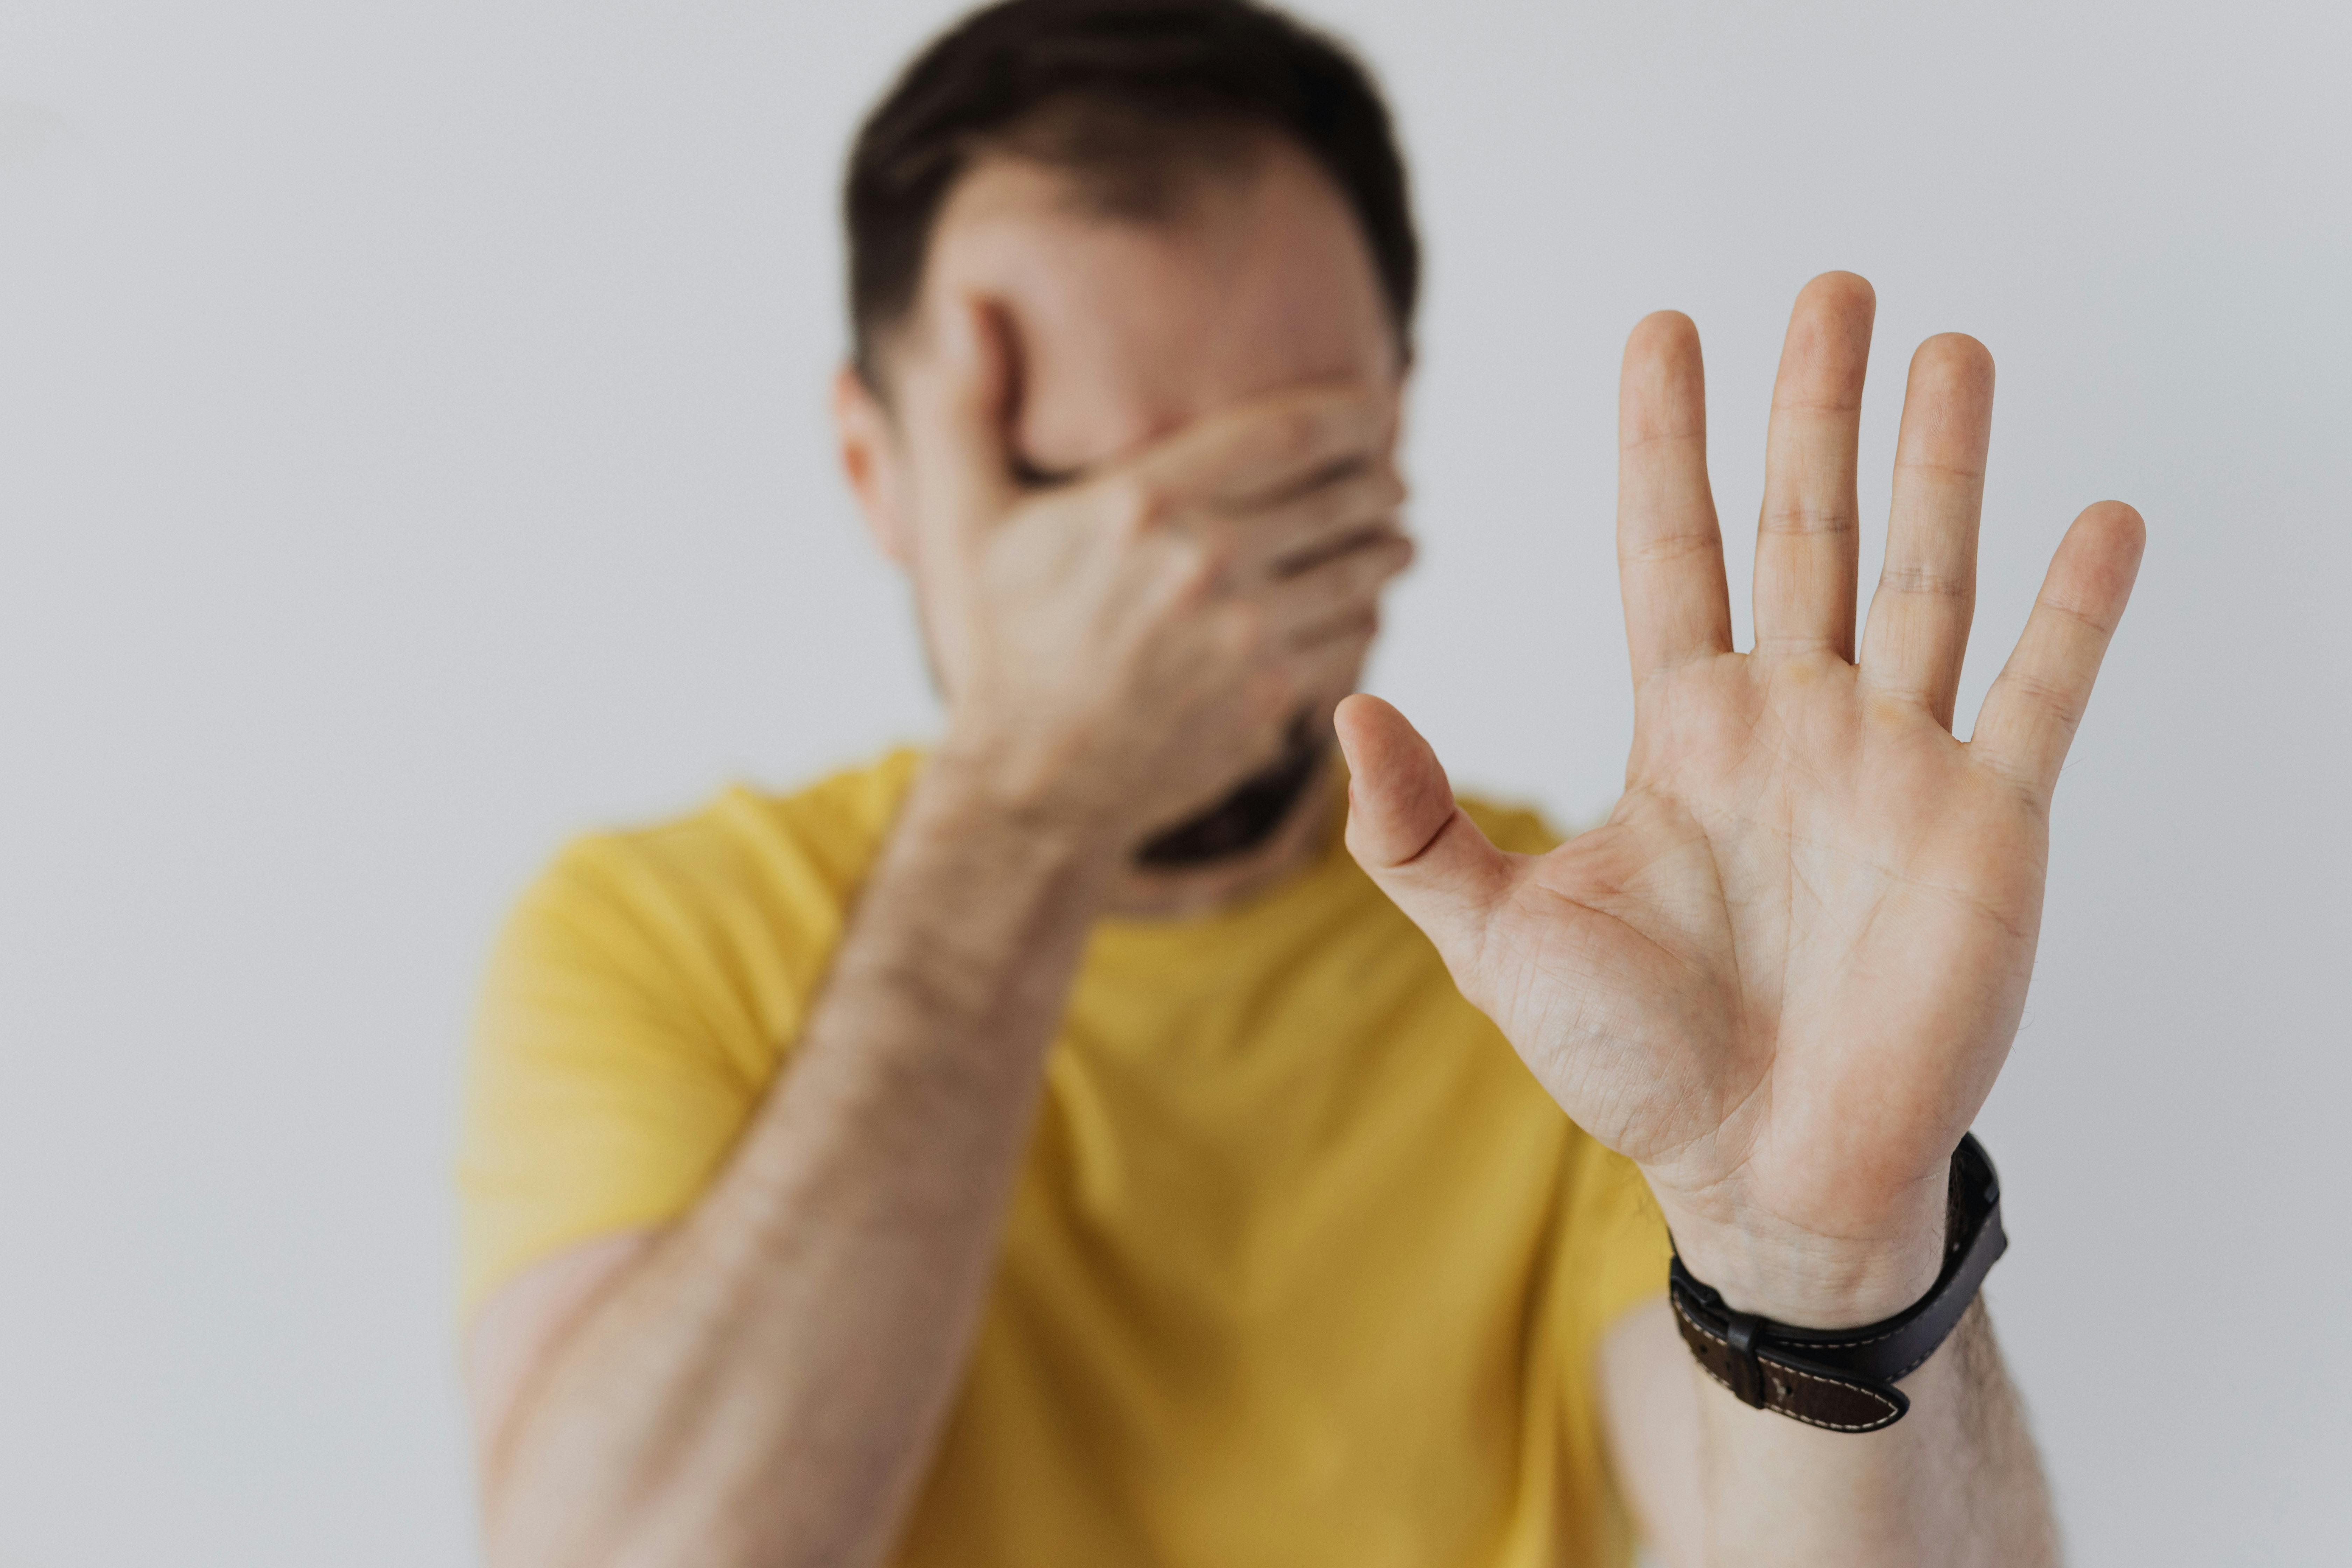 Un hombre mostrando la palma de la mano, indicando "alto" | Fuente: Pexels